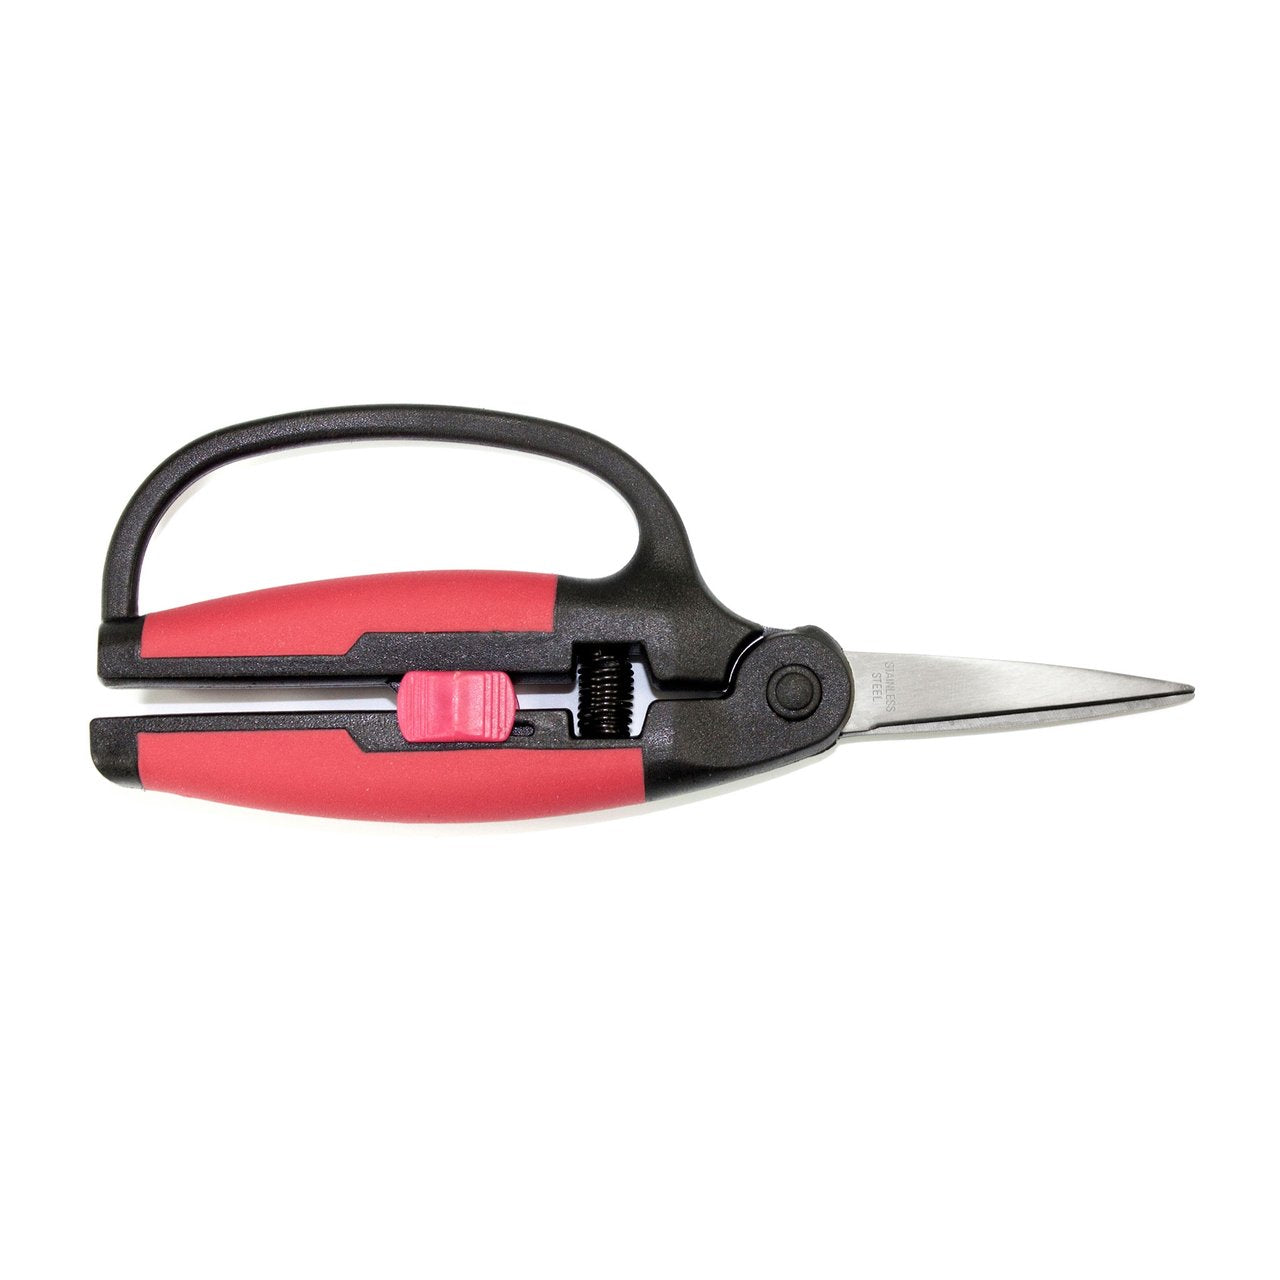 Excel 55621 Comfort grip scissors